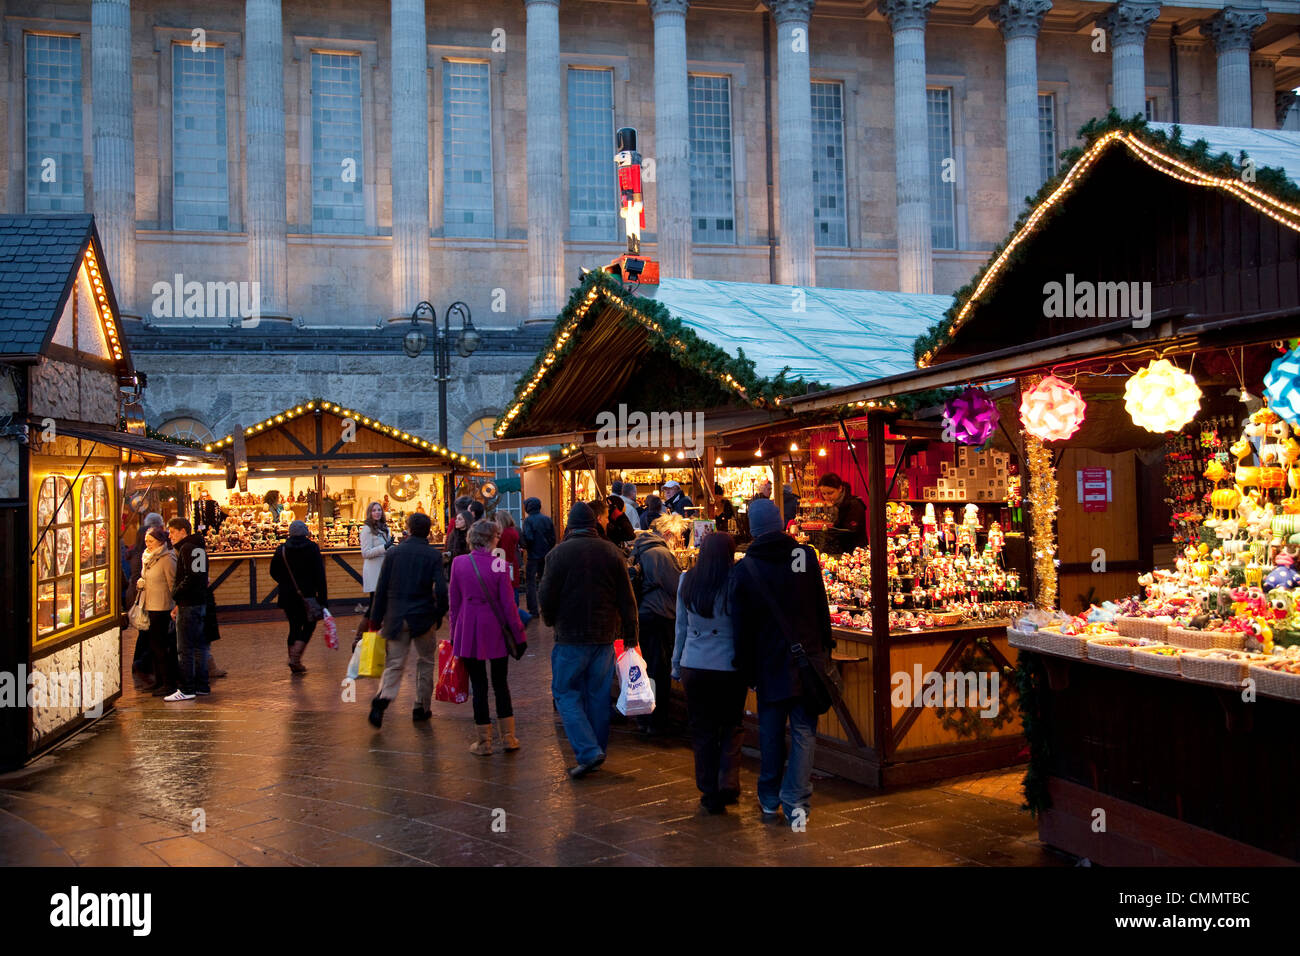 Weihnachtsmarkt-Ständen und Rathaus, Stadtzentrum, Birmingham, West Midlands, England, Vereinigtes Königreich, Europa Stockfoto